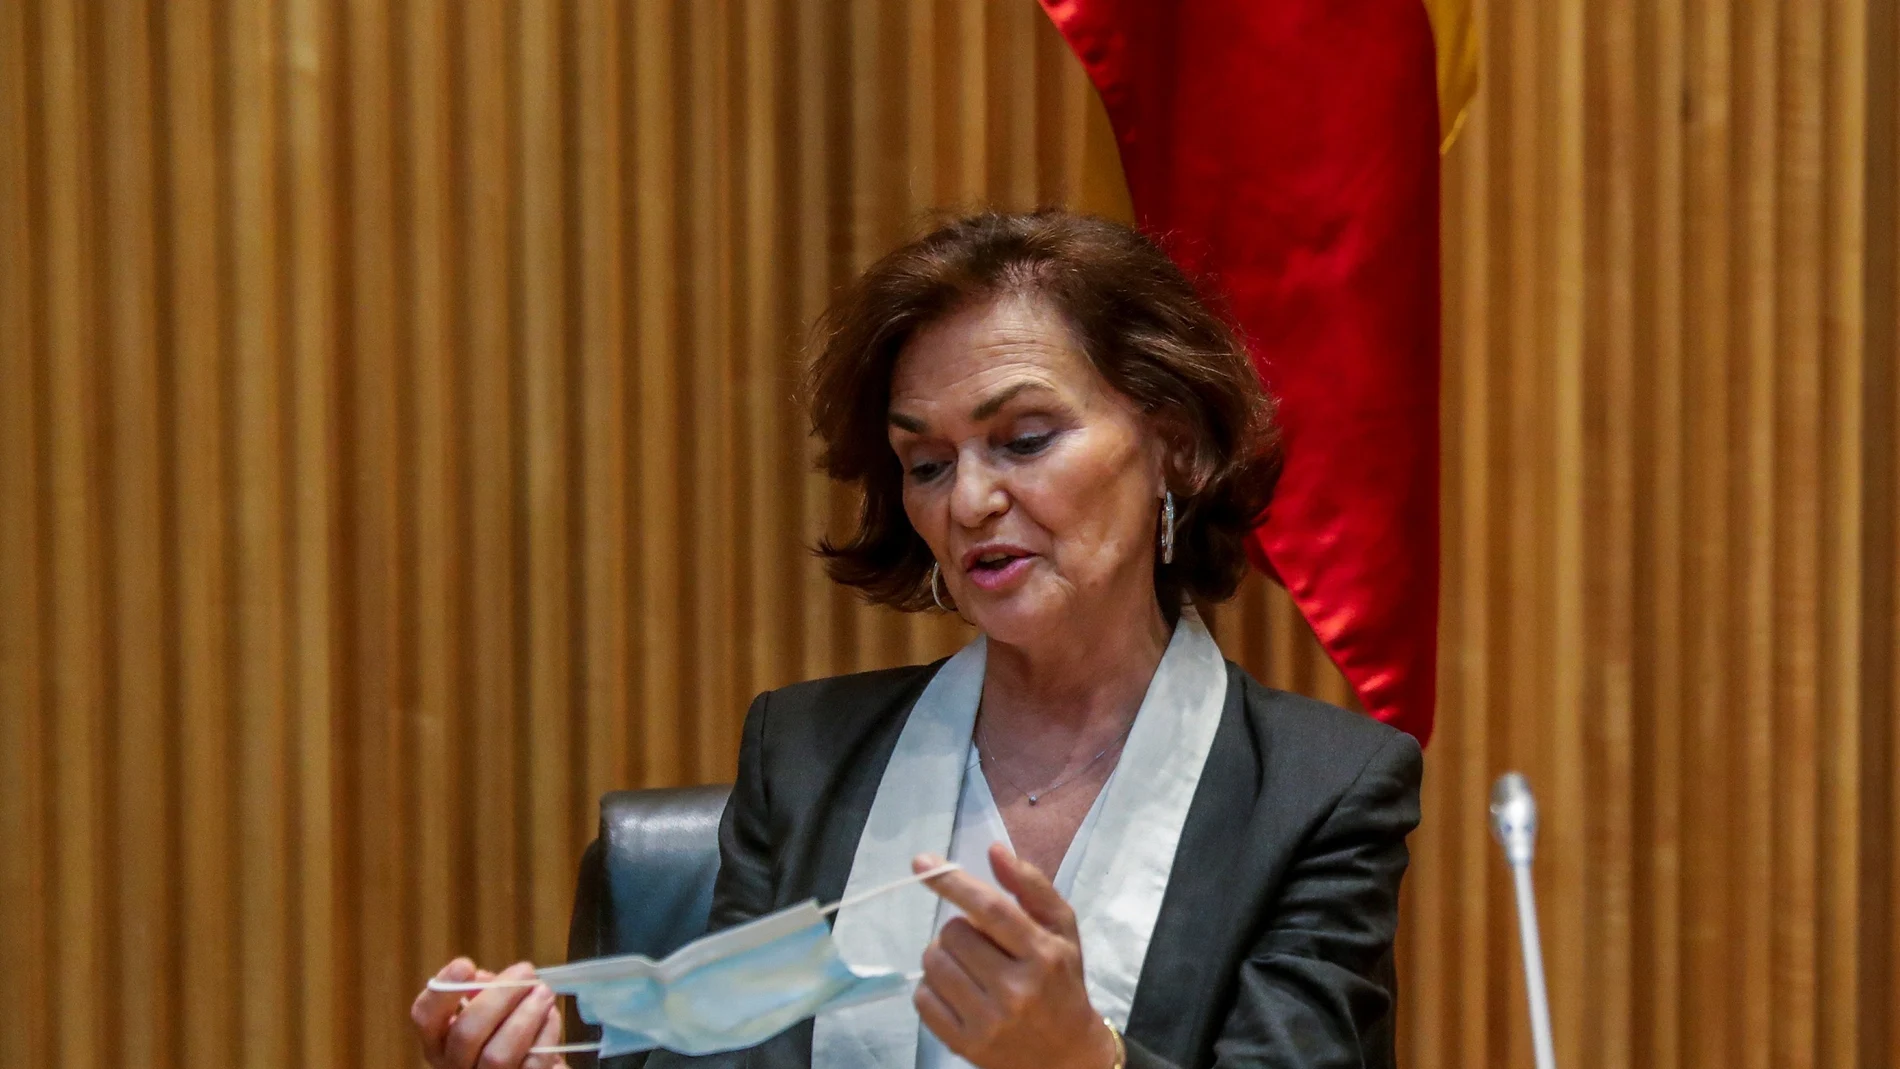 La vicepresidenta primera del Gobierno, Carmen Calvo, arranca la ronda de comparecencias ante la Comisión para la Reconstrucción creada en el Congreso que tratará de acordar una serie de propuestas frente a los efectos sociales y económicos de la crisis del coronavirus.